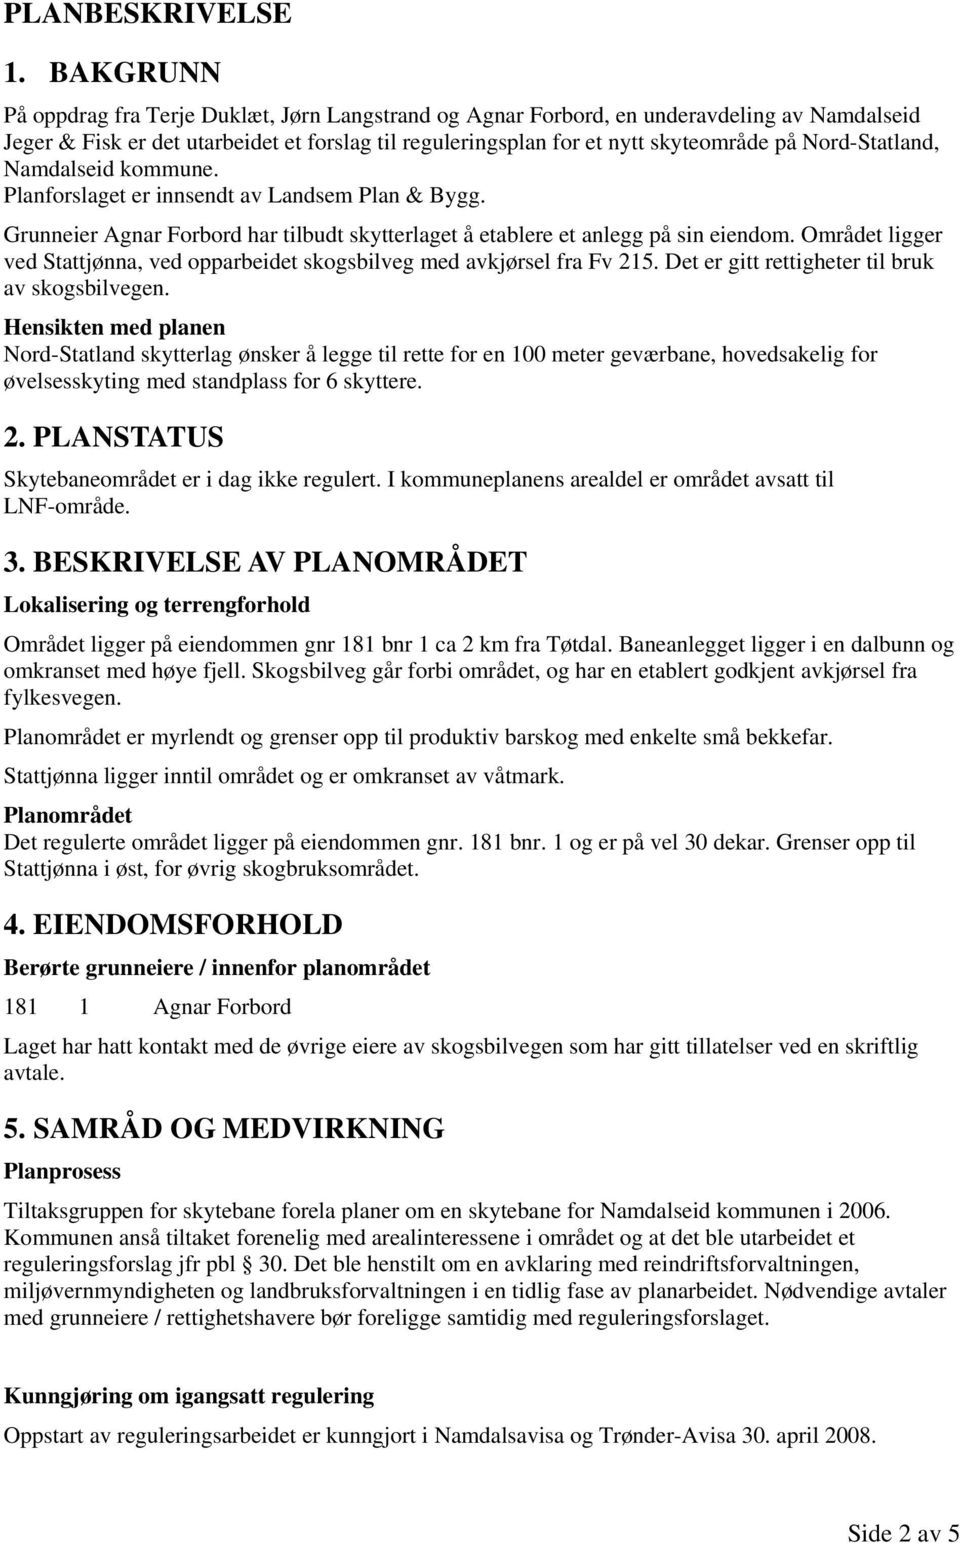 Nord-Statland, Namdalseid kommune. Planforslaget er innsendt av Landsem Plan & Bygg. Grunneier Agnar Forbord har tilbudt skytterlaget å etablere et anlegg på sin eiendom.